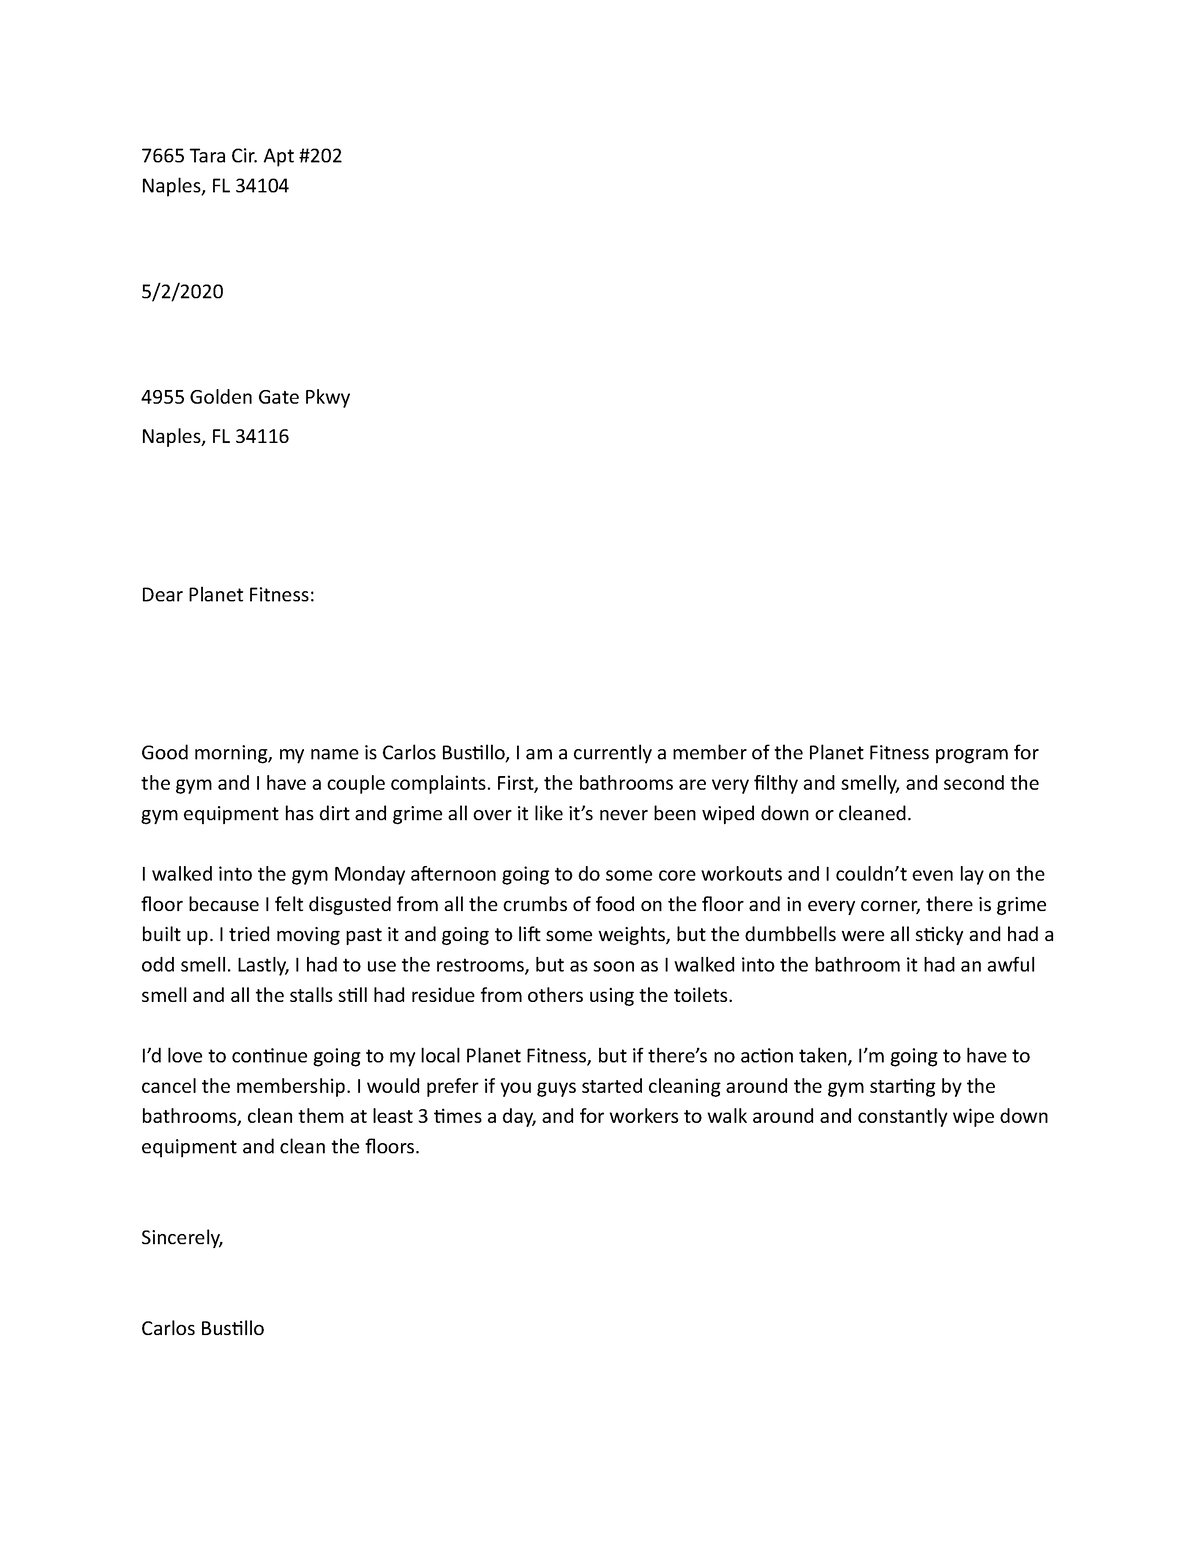 letter for reading - 7665 Tara Cir. Apt # Naples, FL 34104 5/2/ 4955 ...